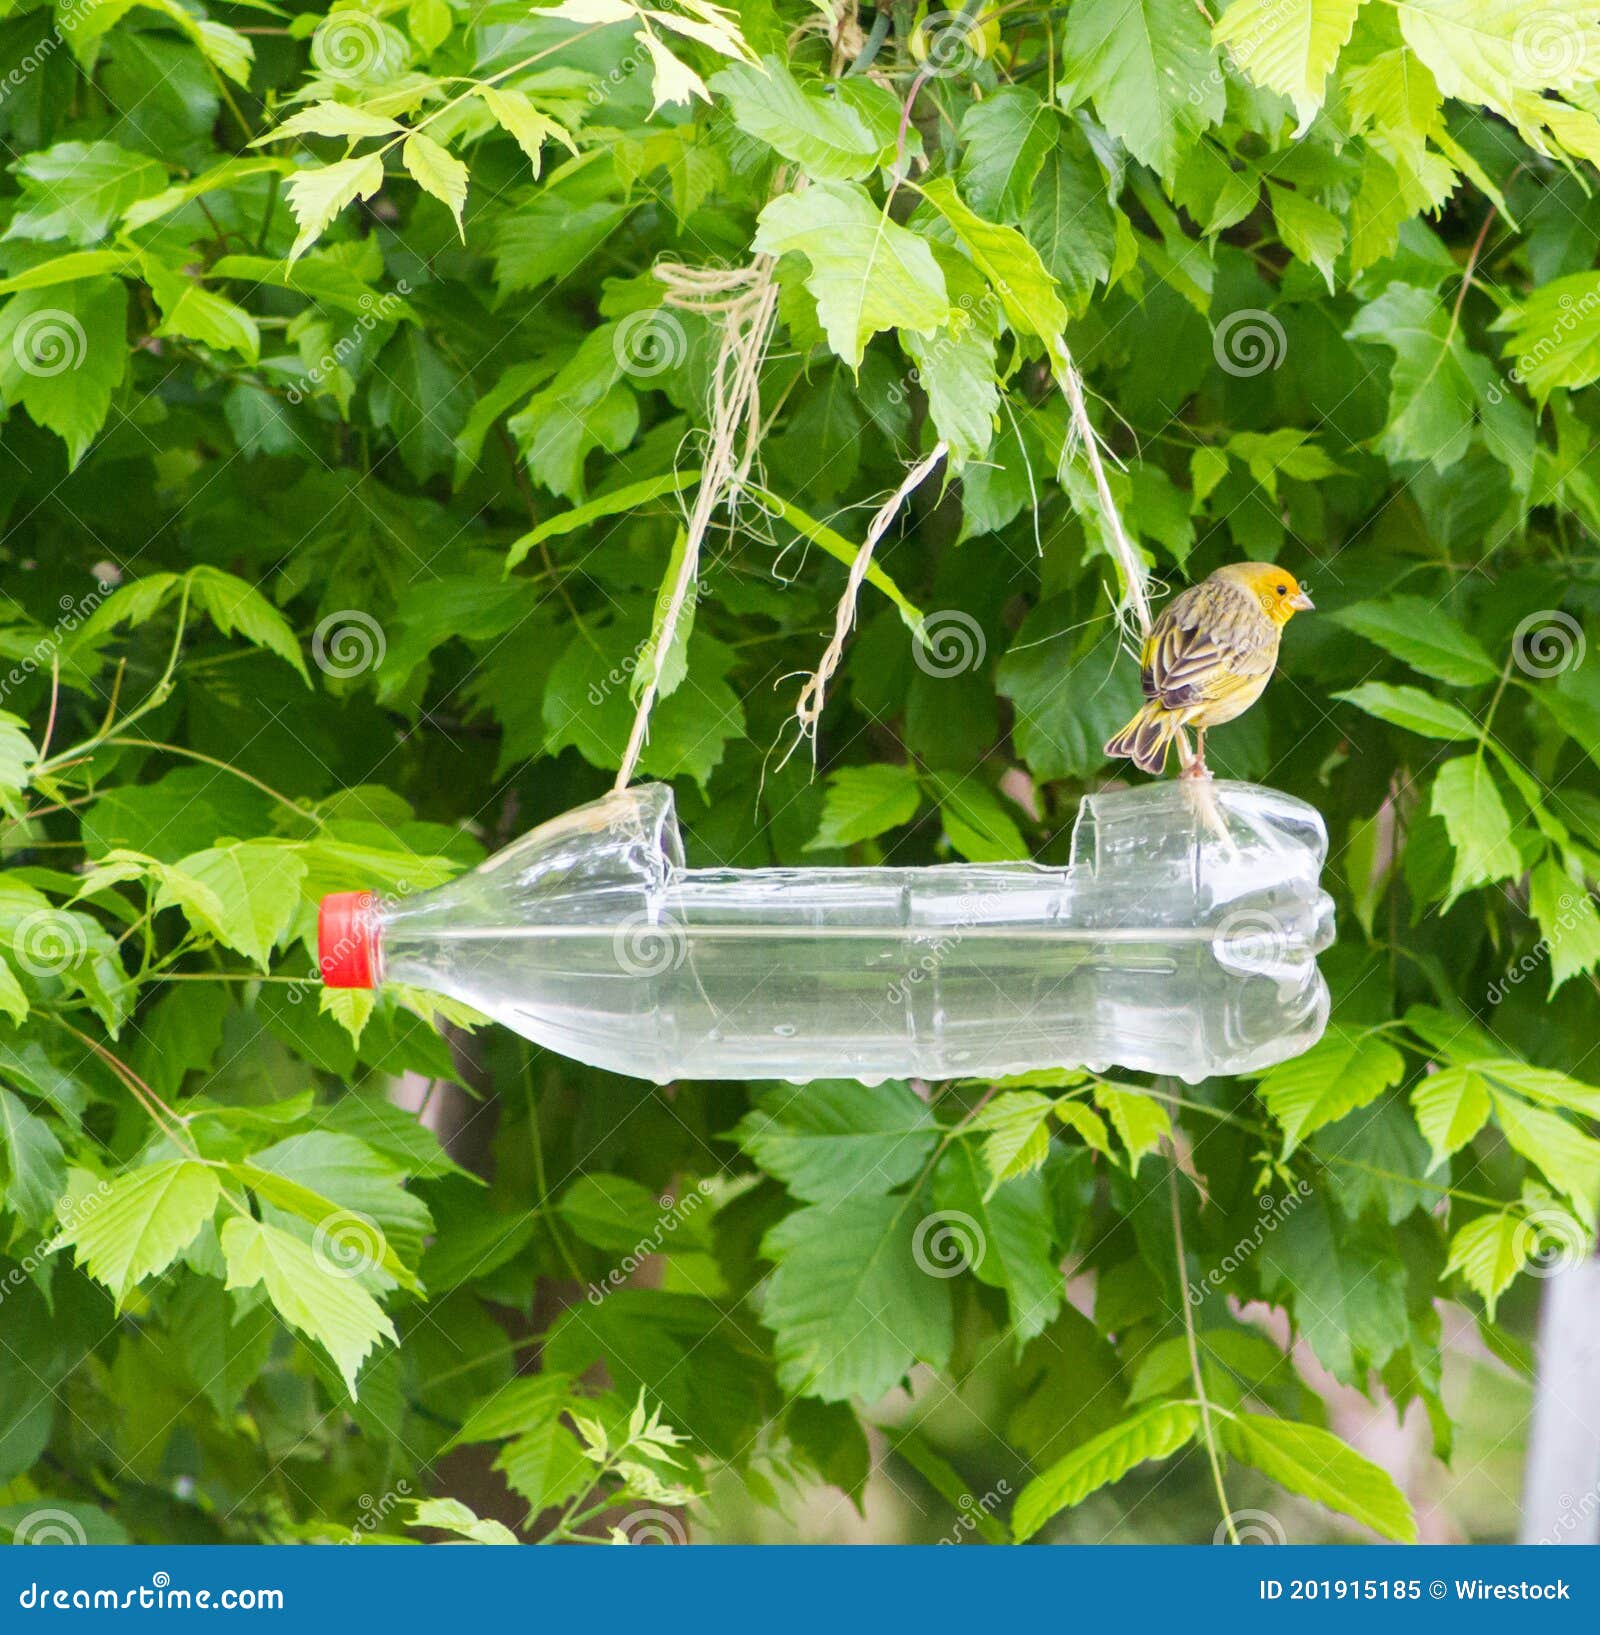 extraño tela Ciro Alimentadores Artesanales Y Waterers Bird Hechos Con Botellas De Plástico  Recicladas Imagen de archivo - Imagen de casero, alimentadores: 201915185